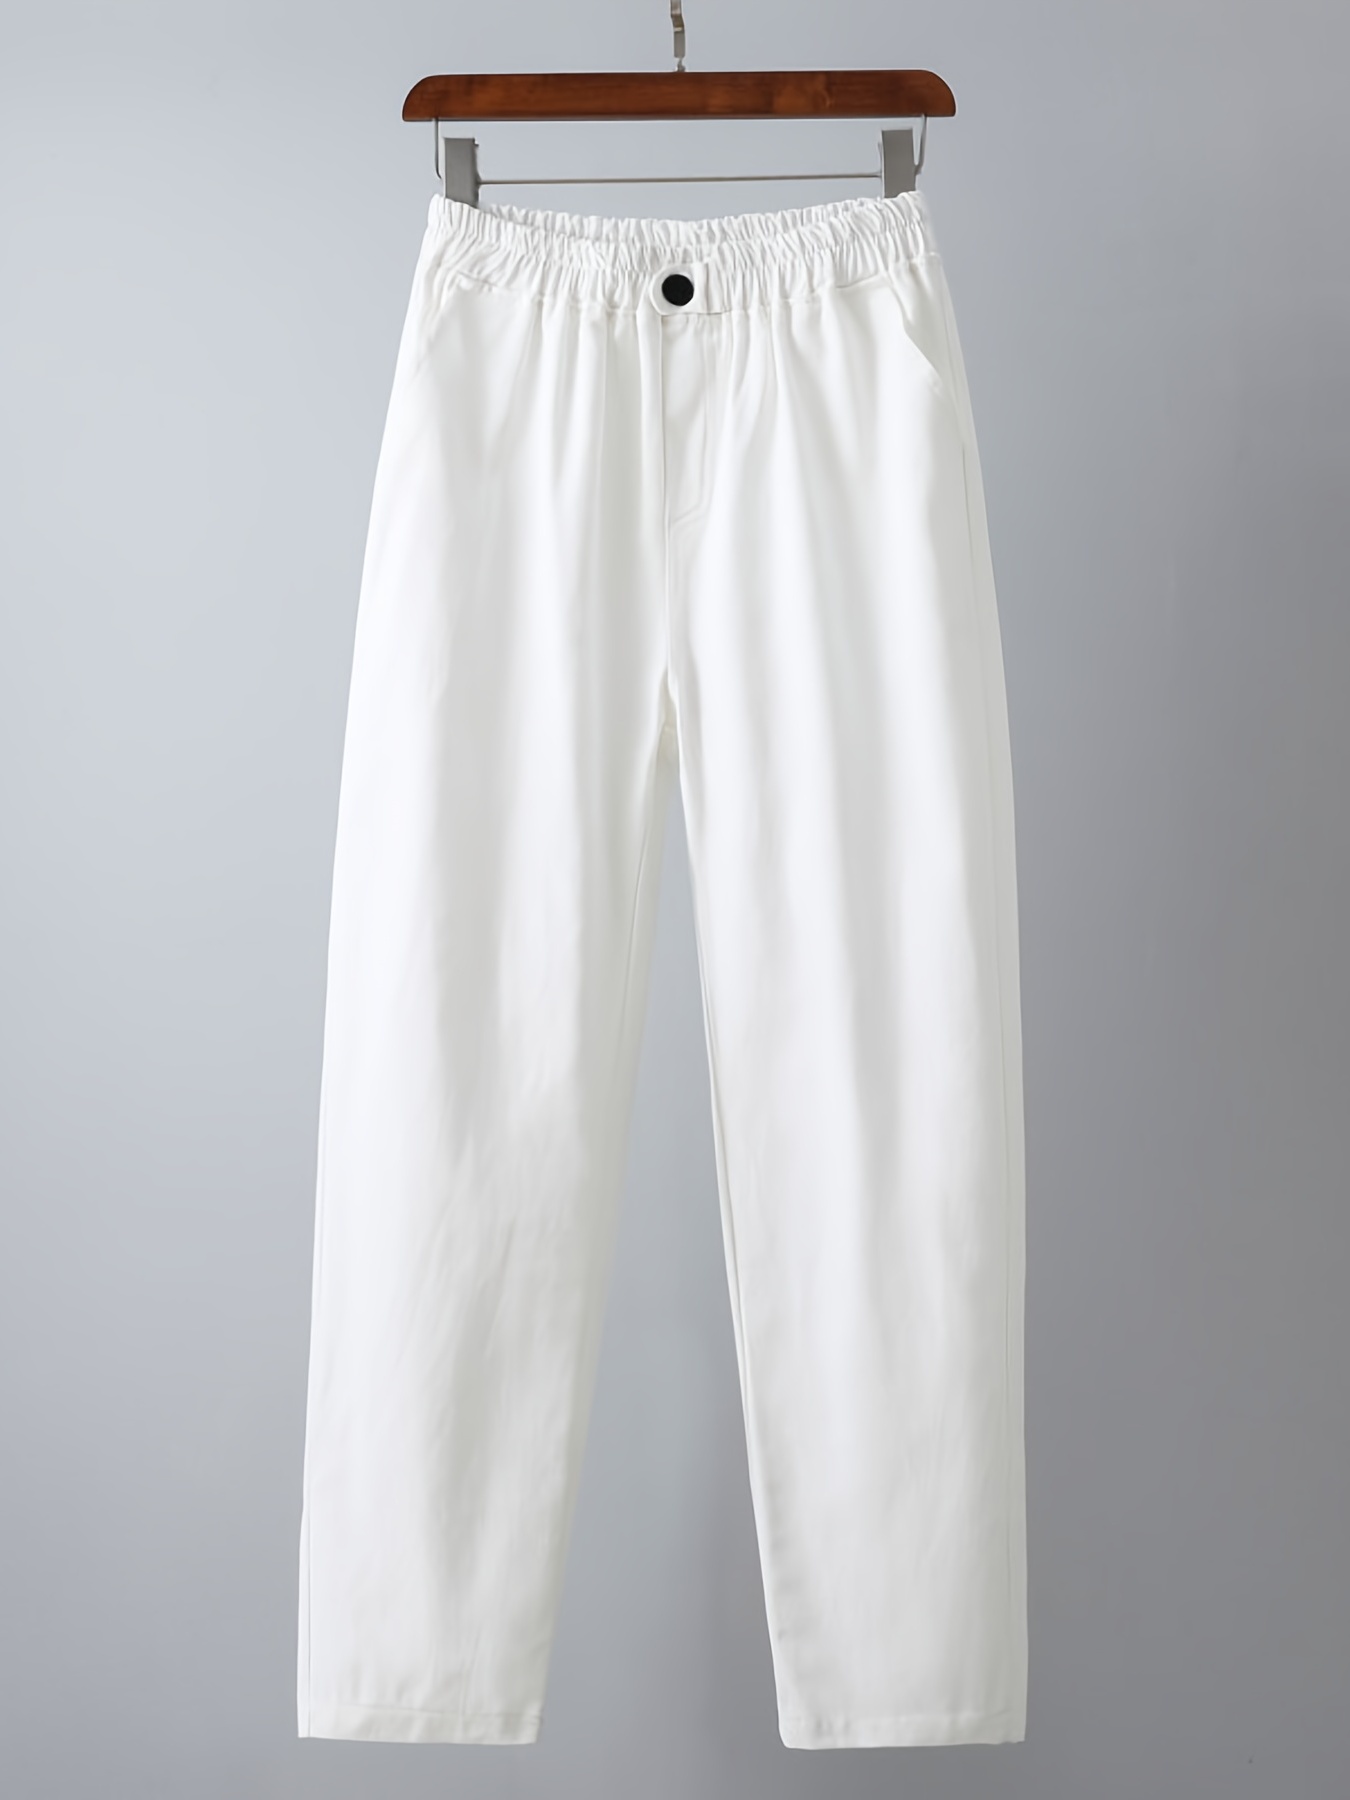 Women's White Skinny Pants | Nordstrom